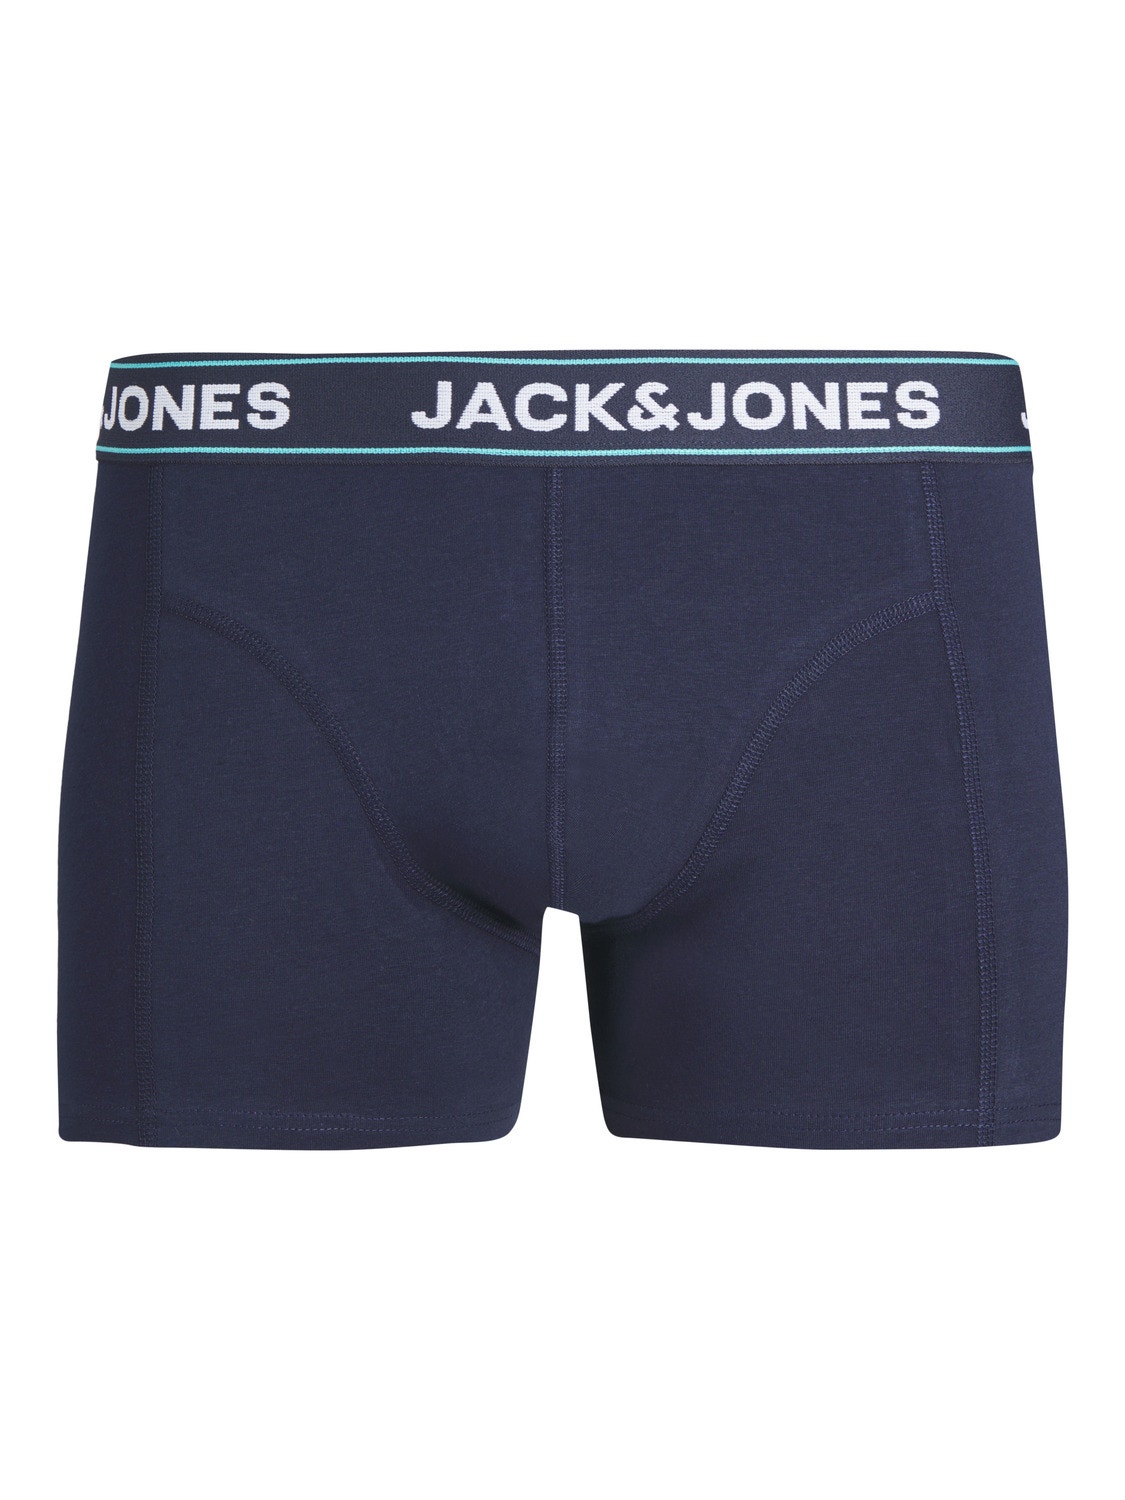 Jack & Jones 3-pack Boxershorts Voor jongens -Navy Blazer - 12253233